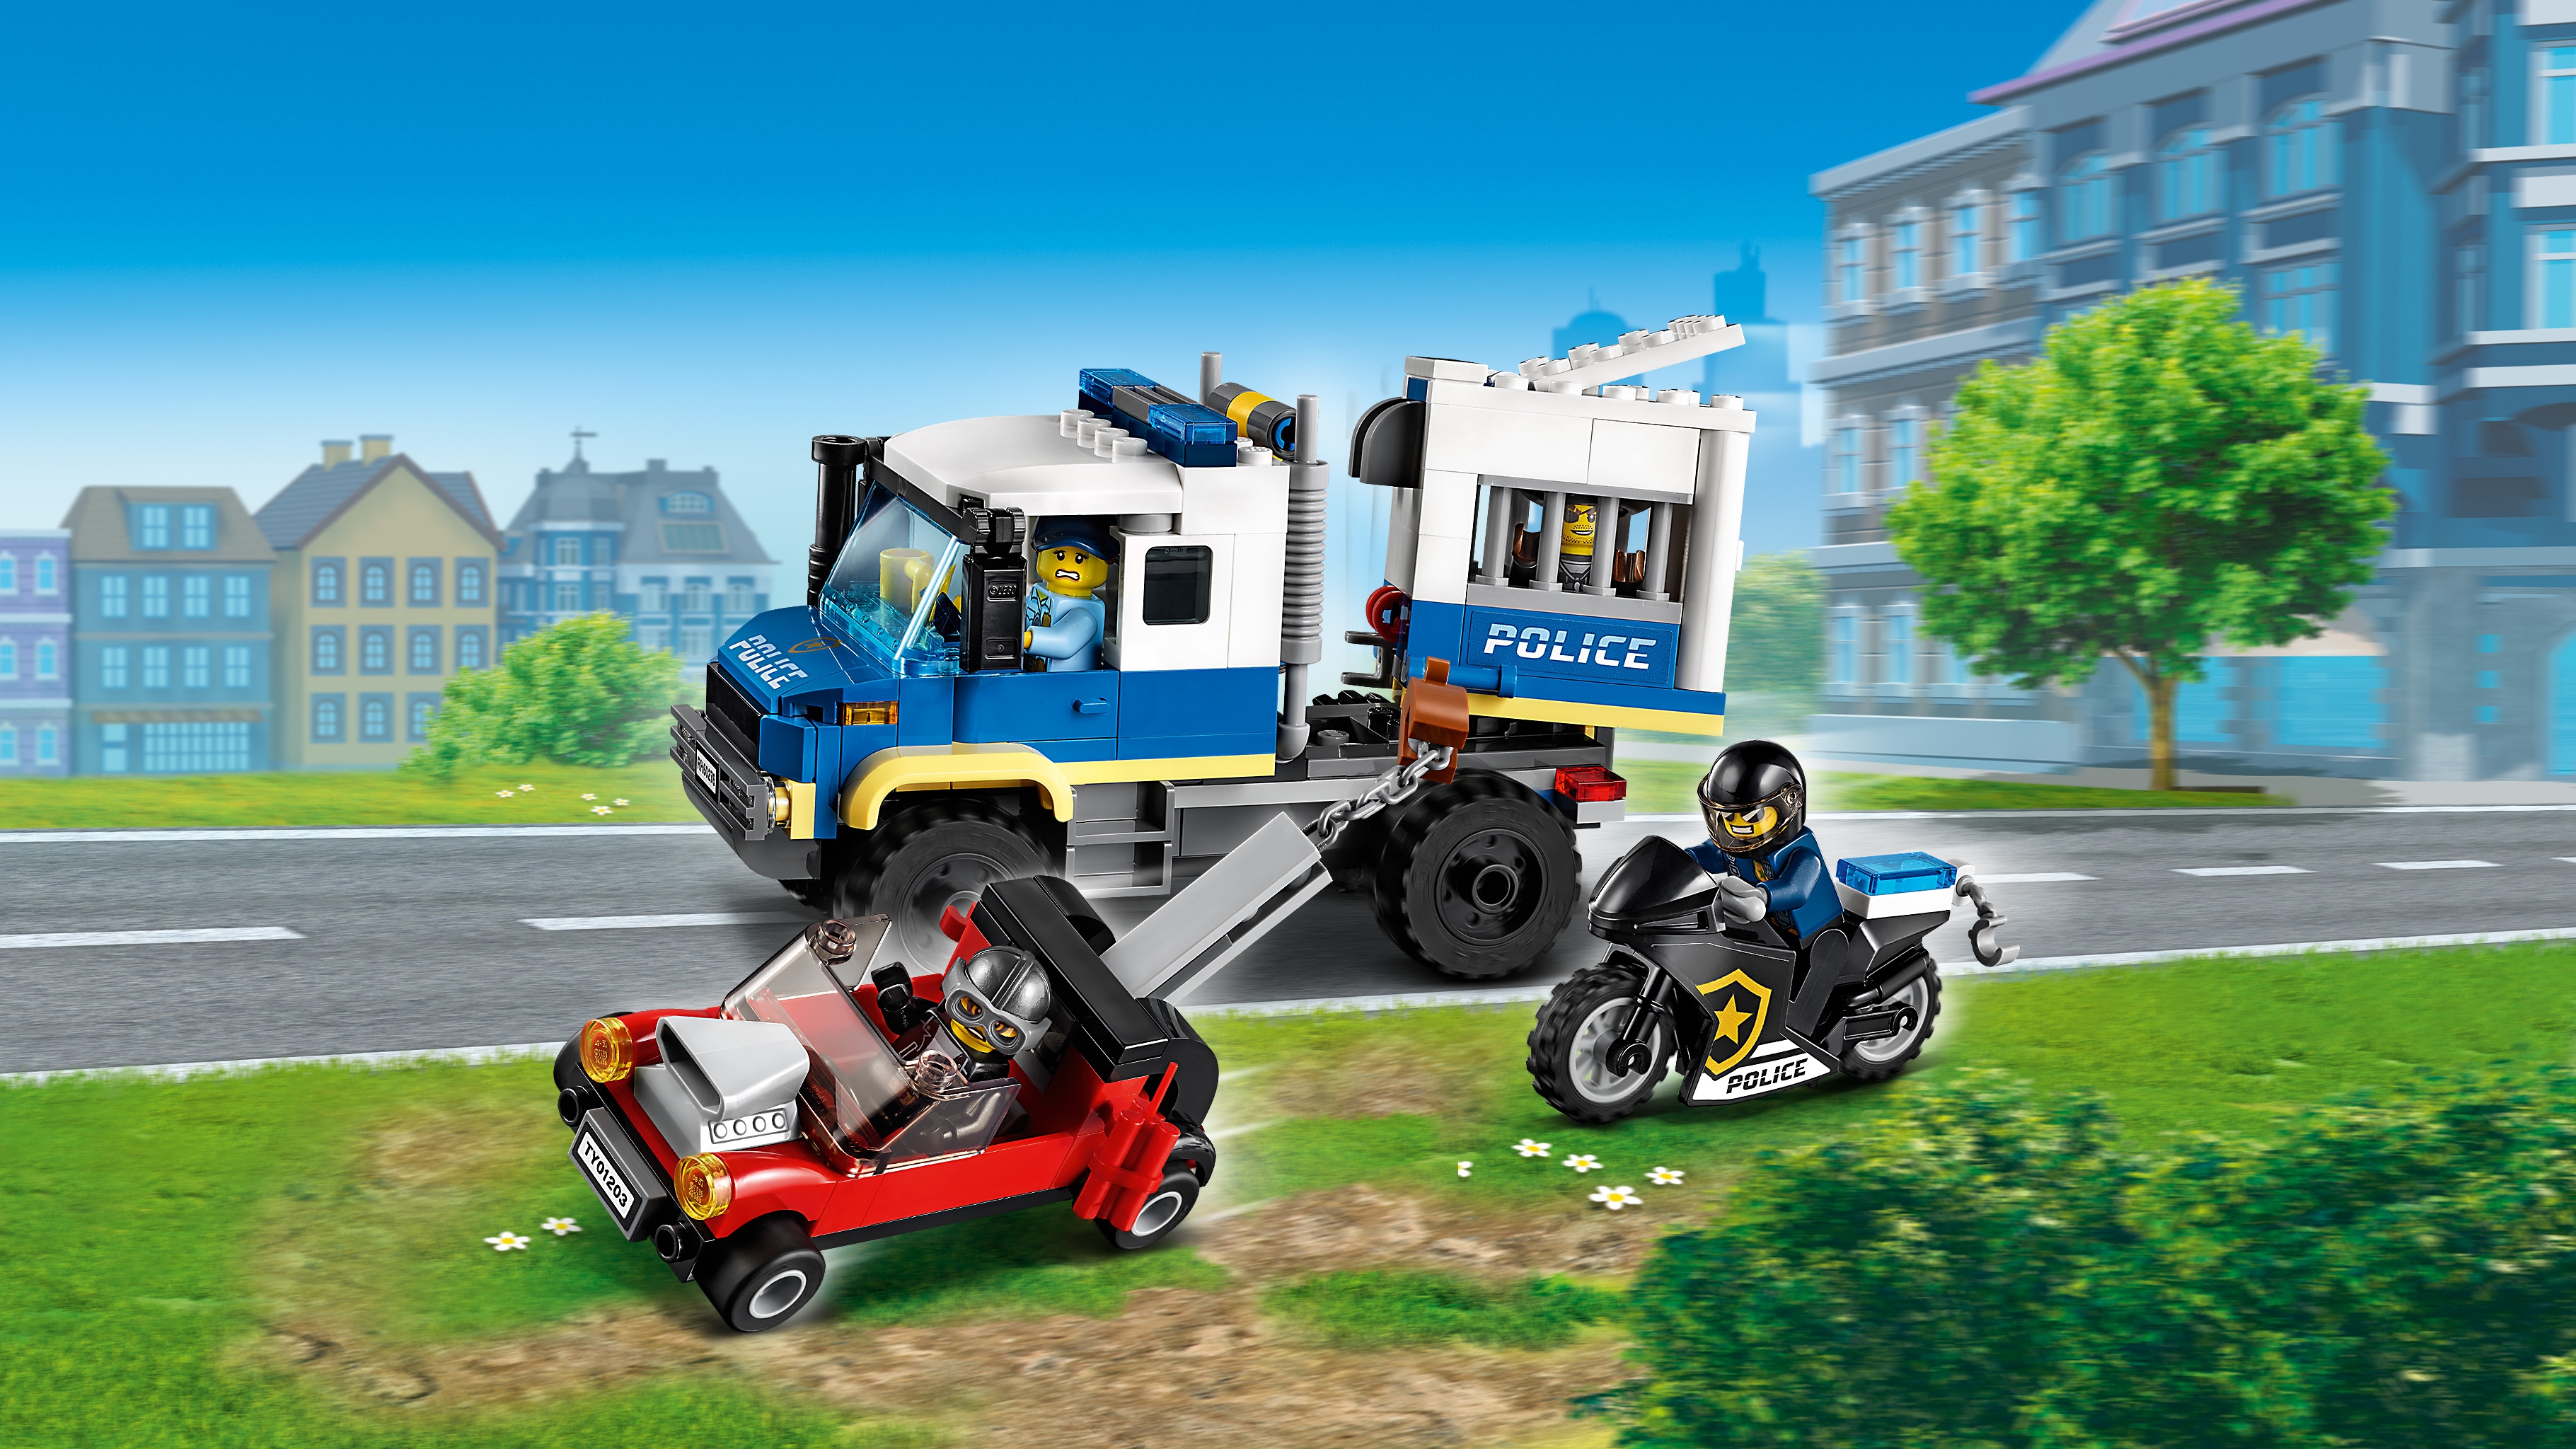 ドロボウの護送車 60276 - レゴ®シティ セット - LEGO.comキッズ